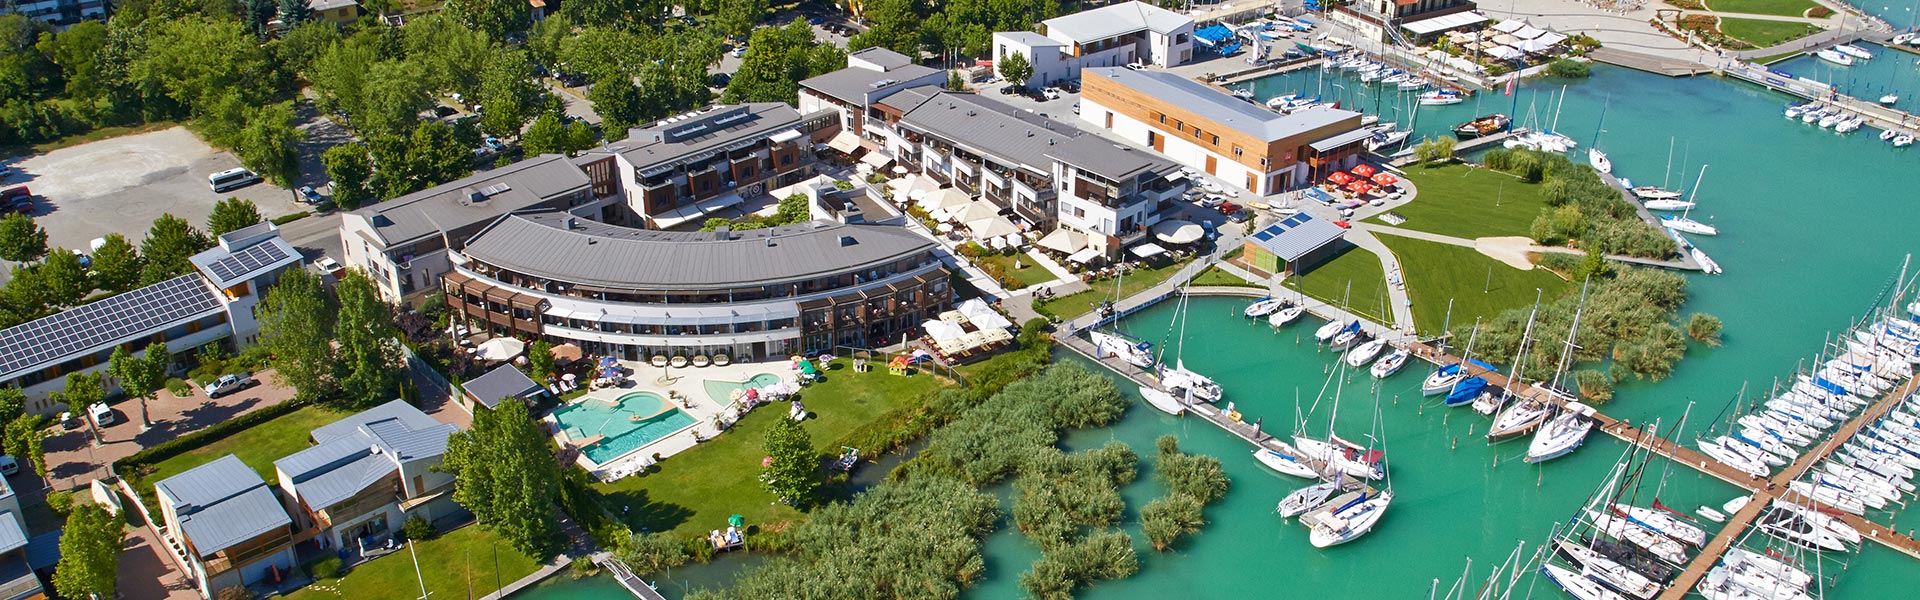 Balatonfüred és környéke :: Hotel Golden Lake Resort